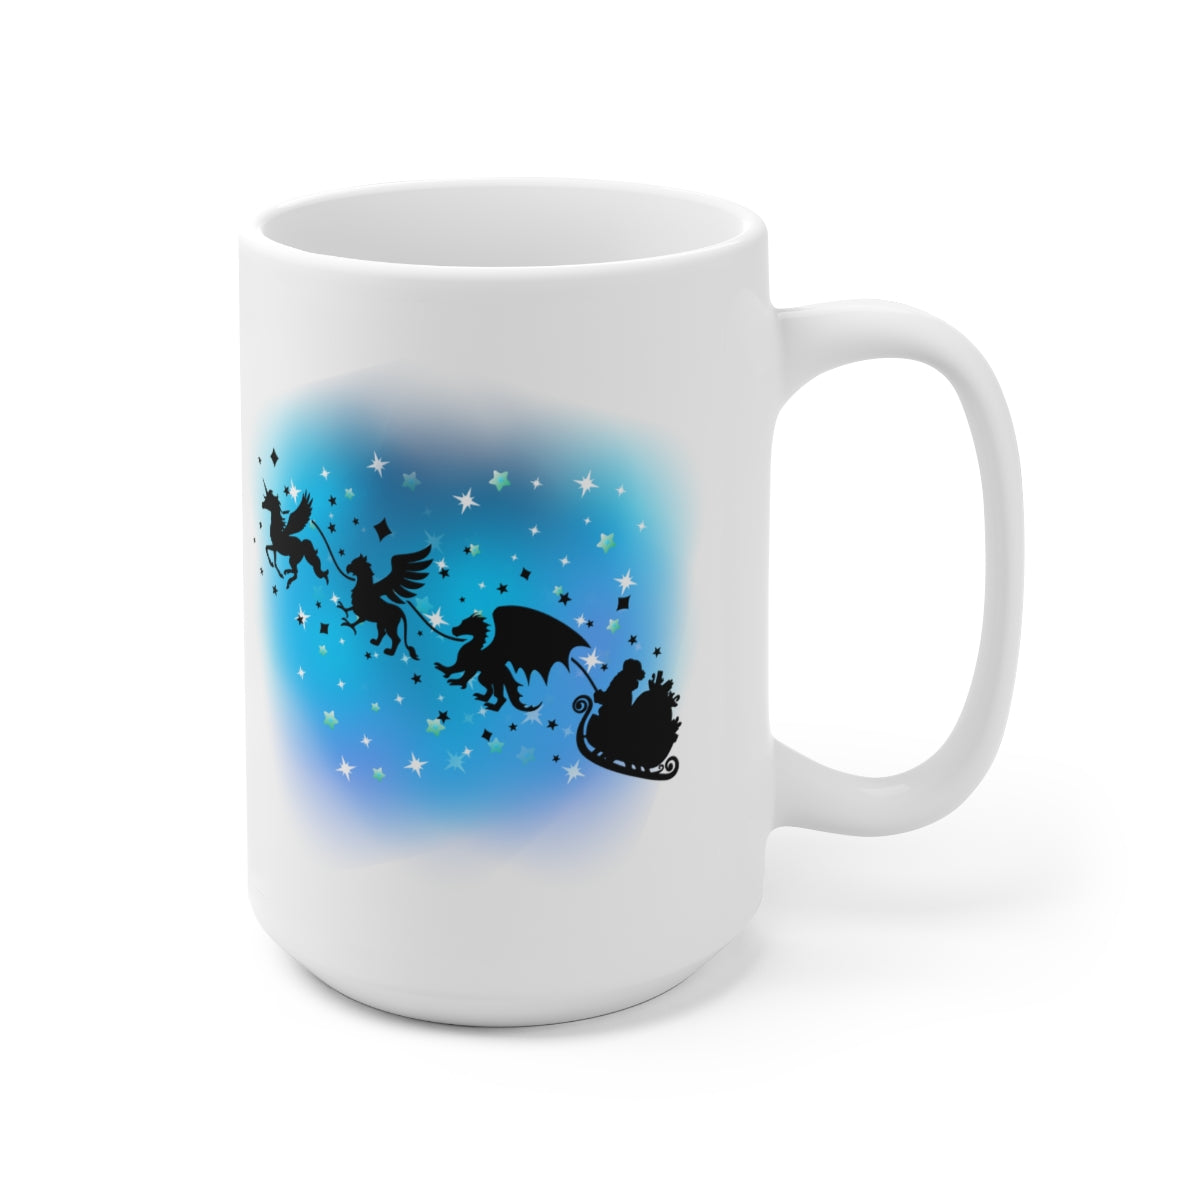 Mystical Flying Creatures with Santa - POD - Ceramic Mug 15oz - Mugshot Monday - 10.17.2022